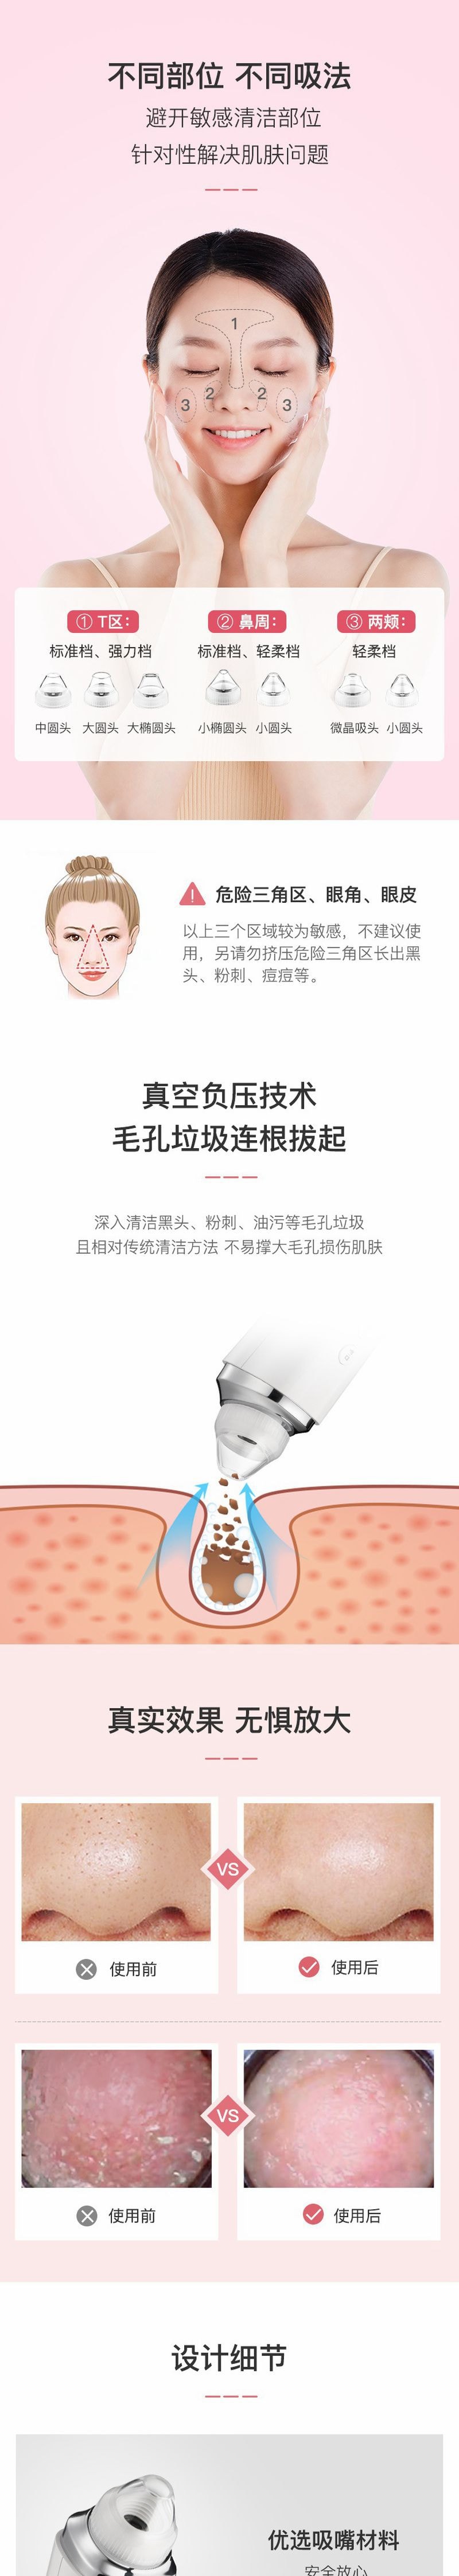 【香港DHL 5-7日达】网易智造  告别‘草莓鼻’ 可视化毛孔清洁电动吸黑头美容仪 白